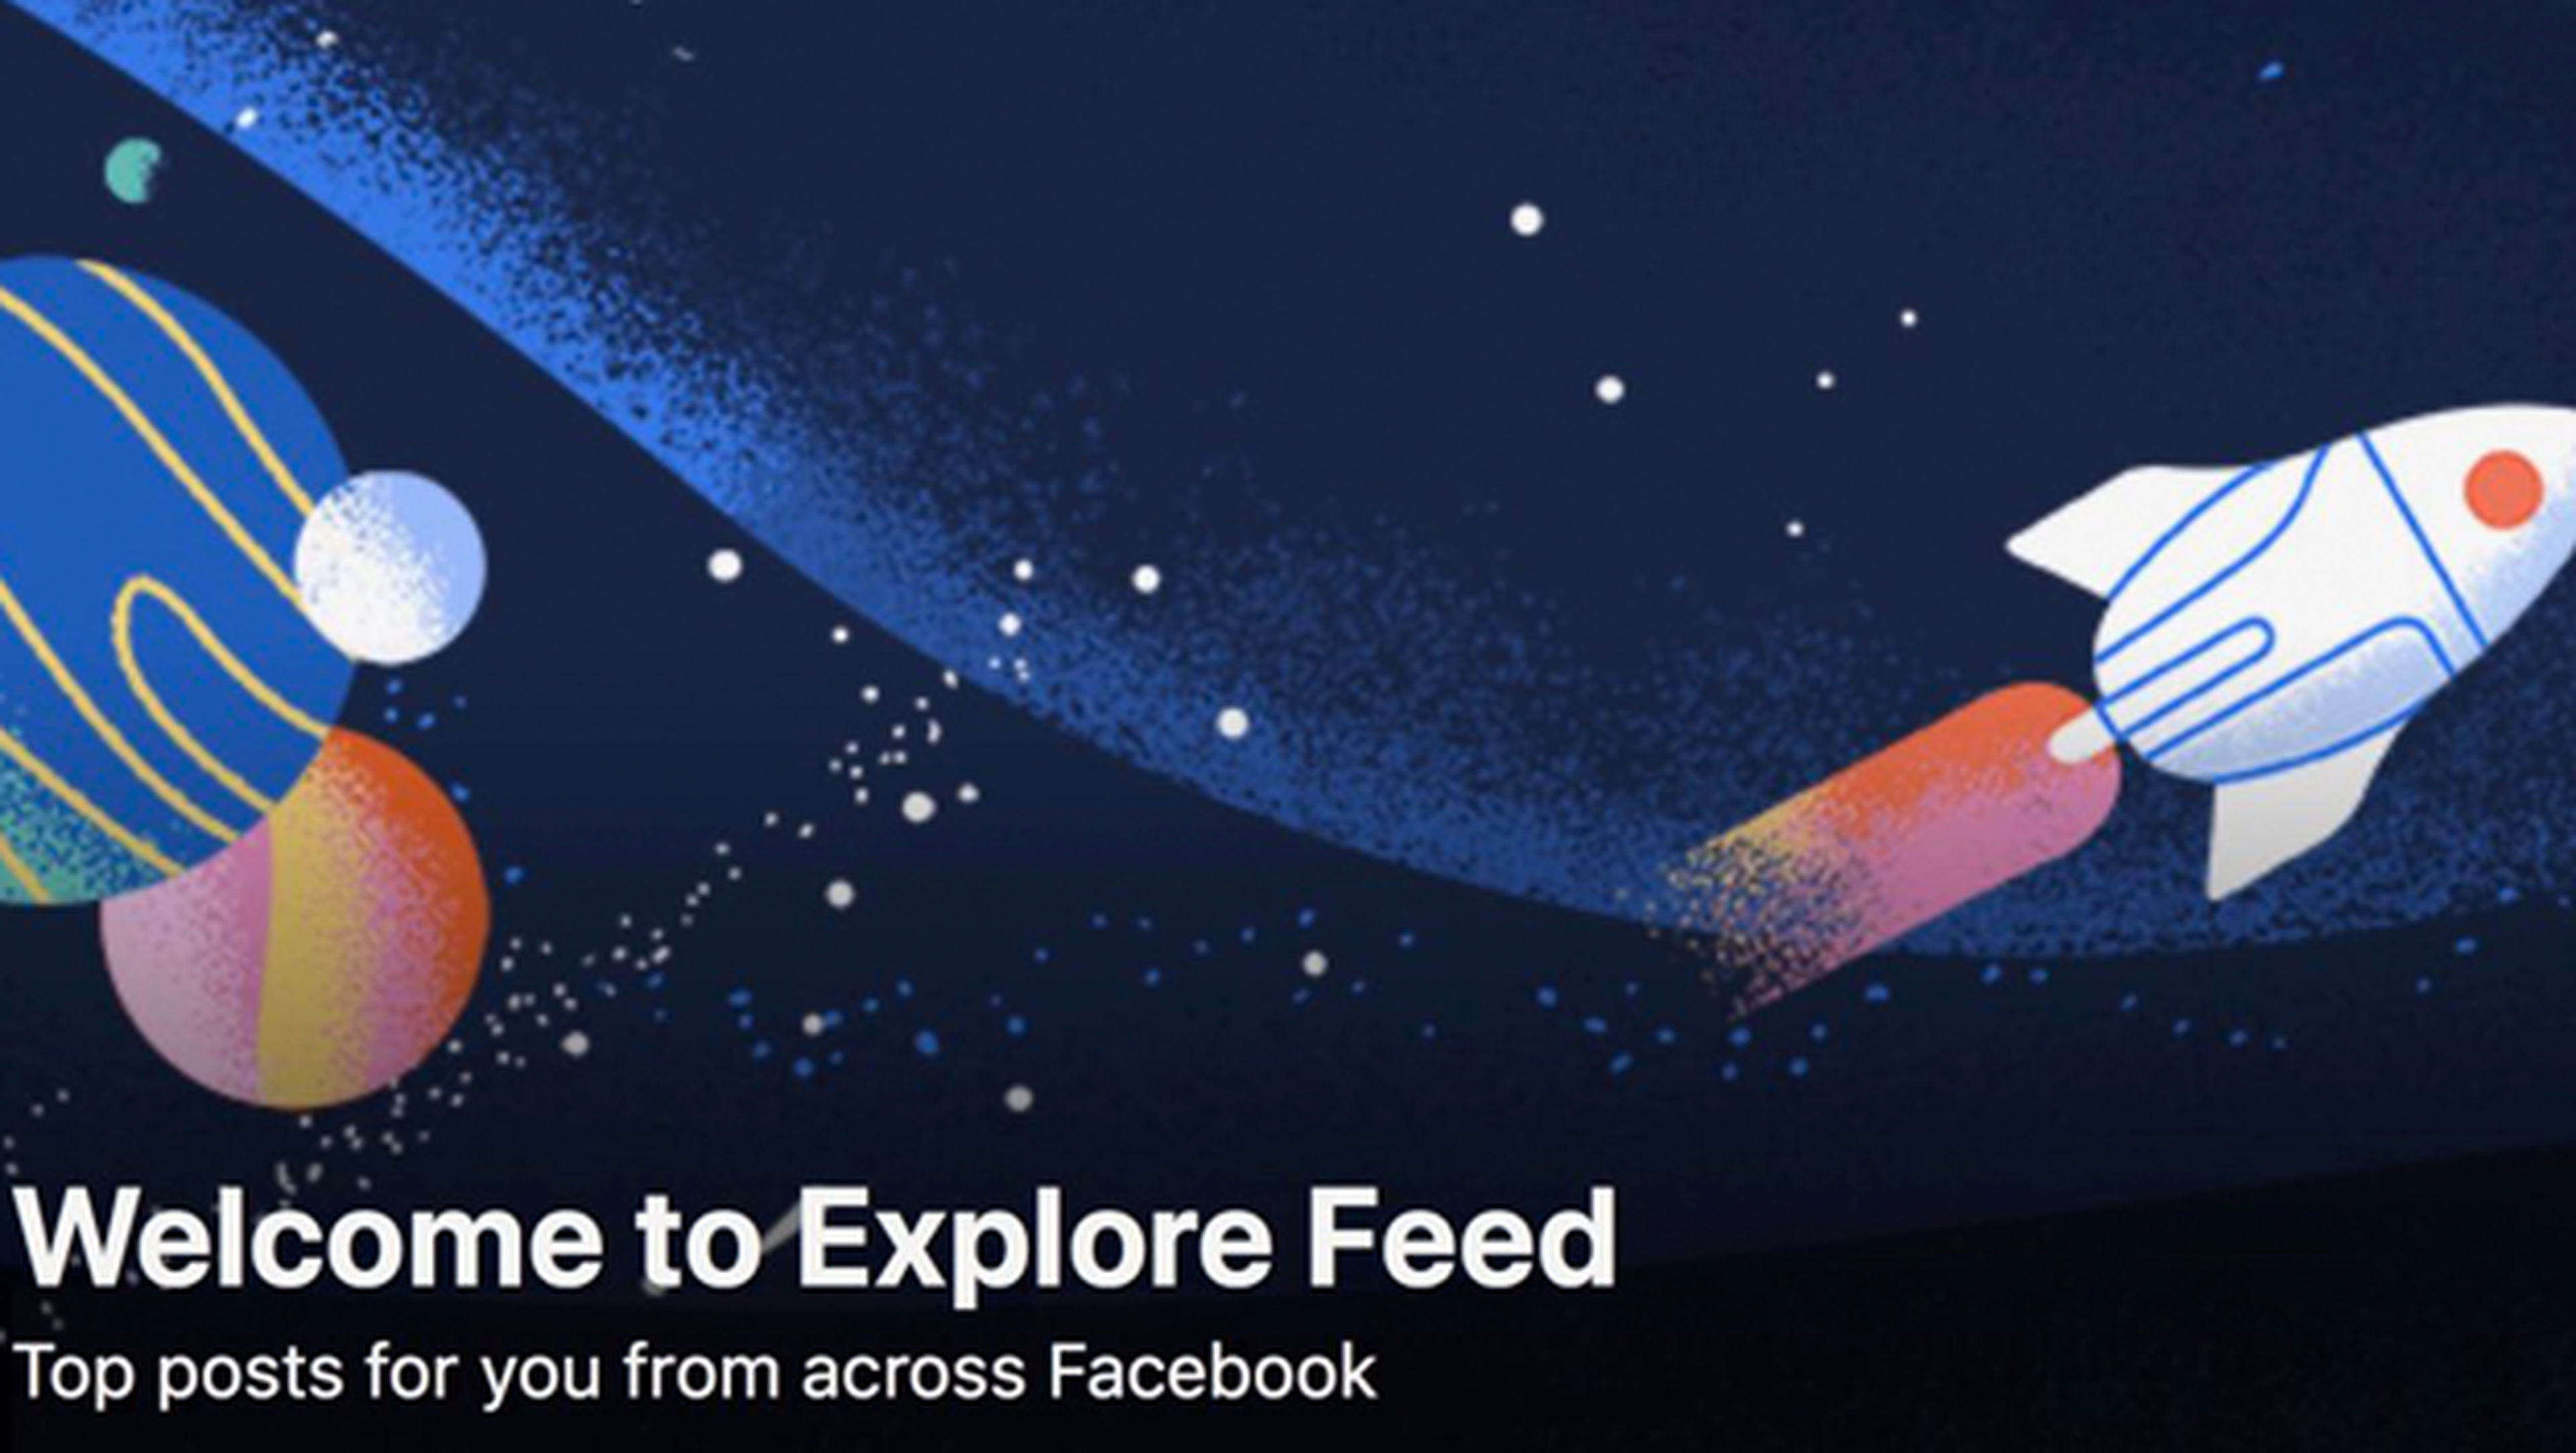 Explore Feed Facebook nueva función explorar contenidos